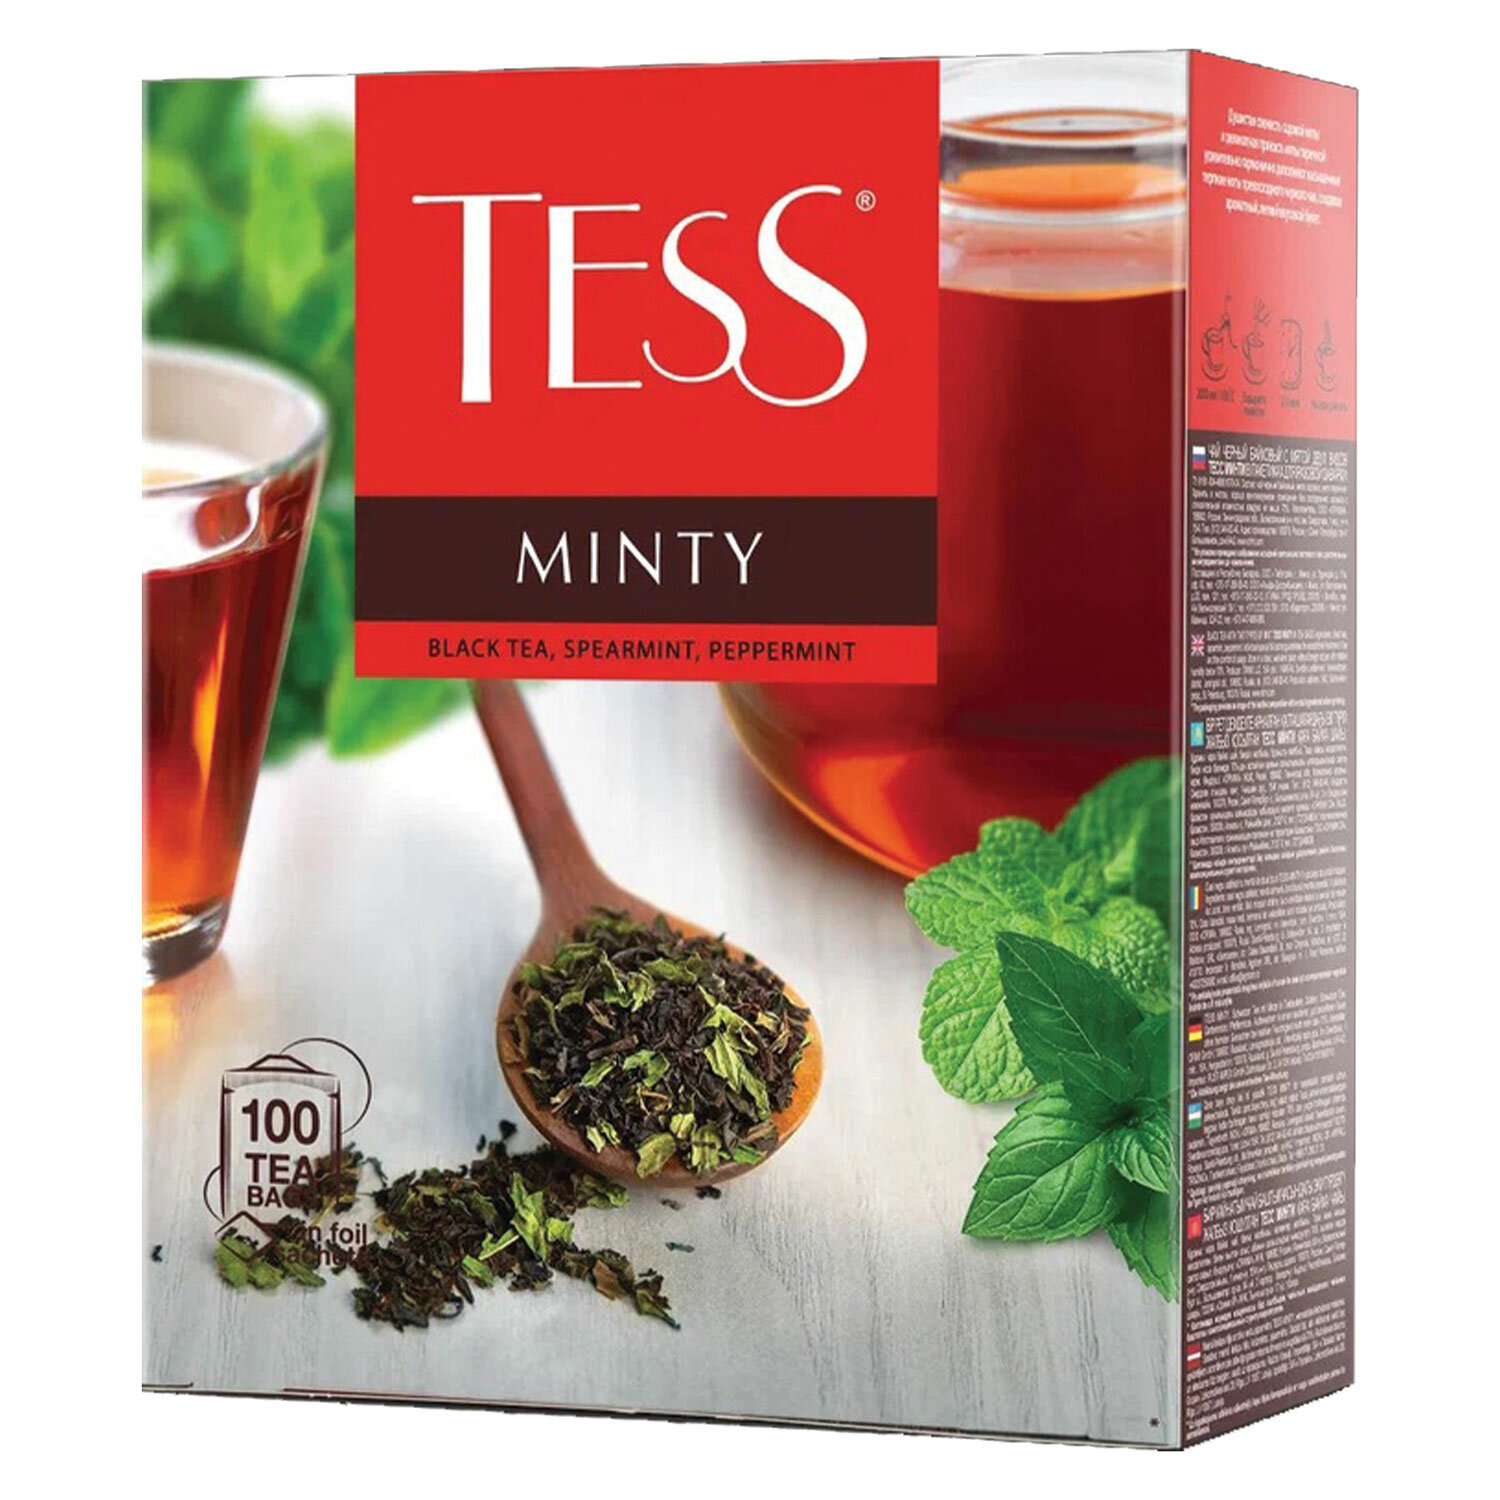  TESS 1663-09